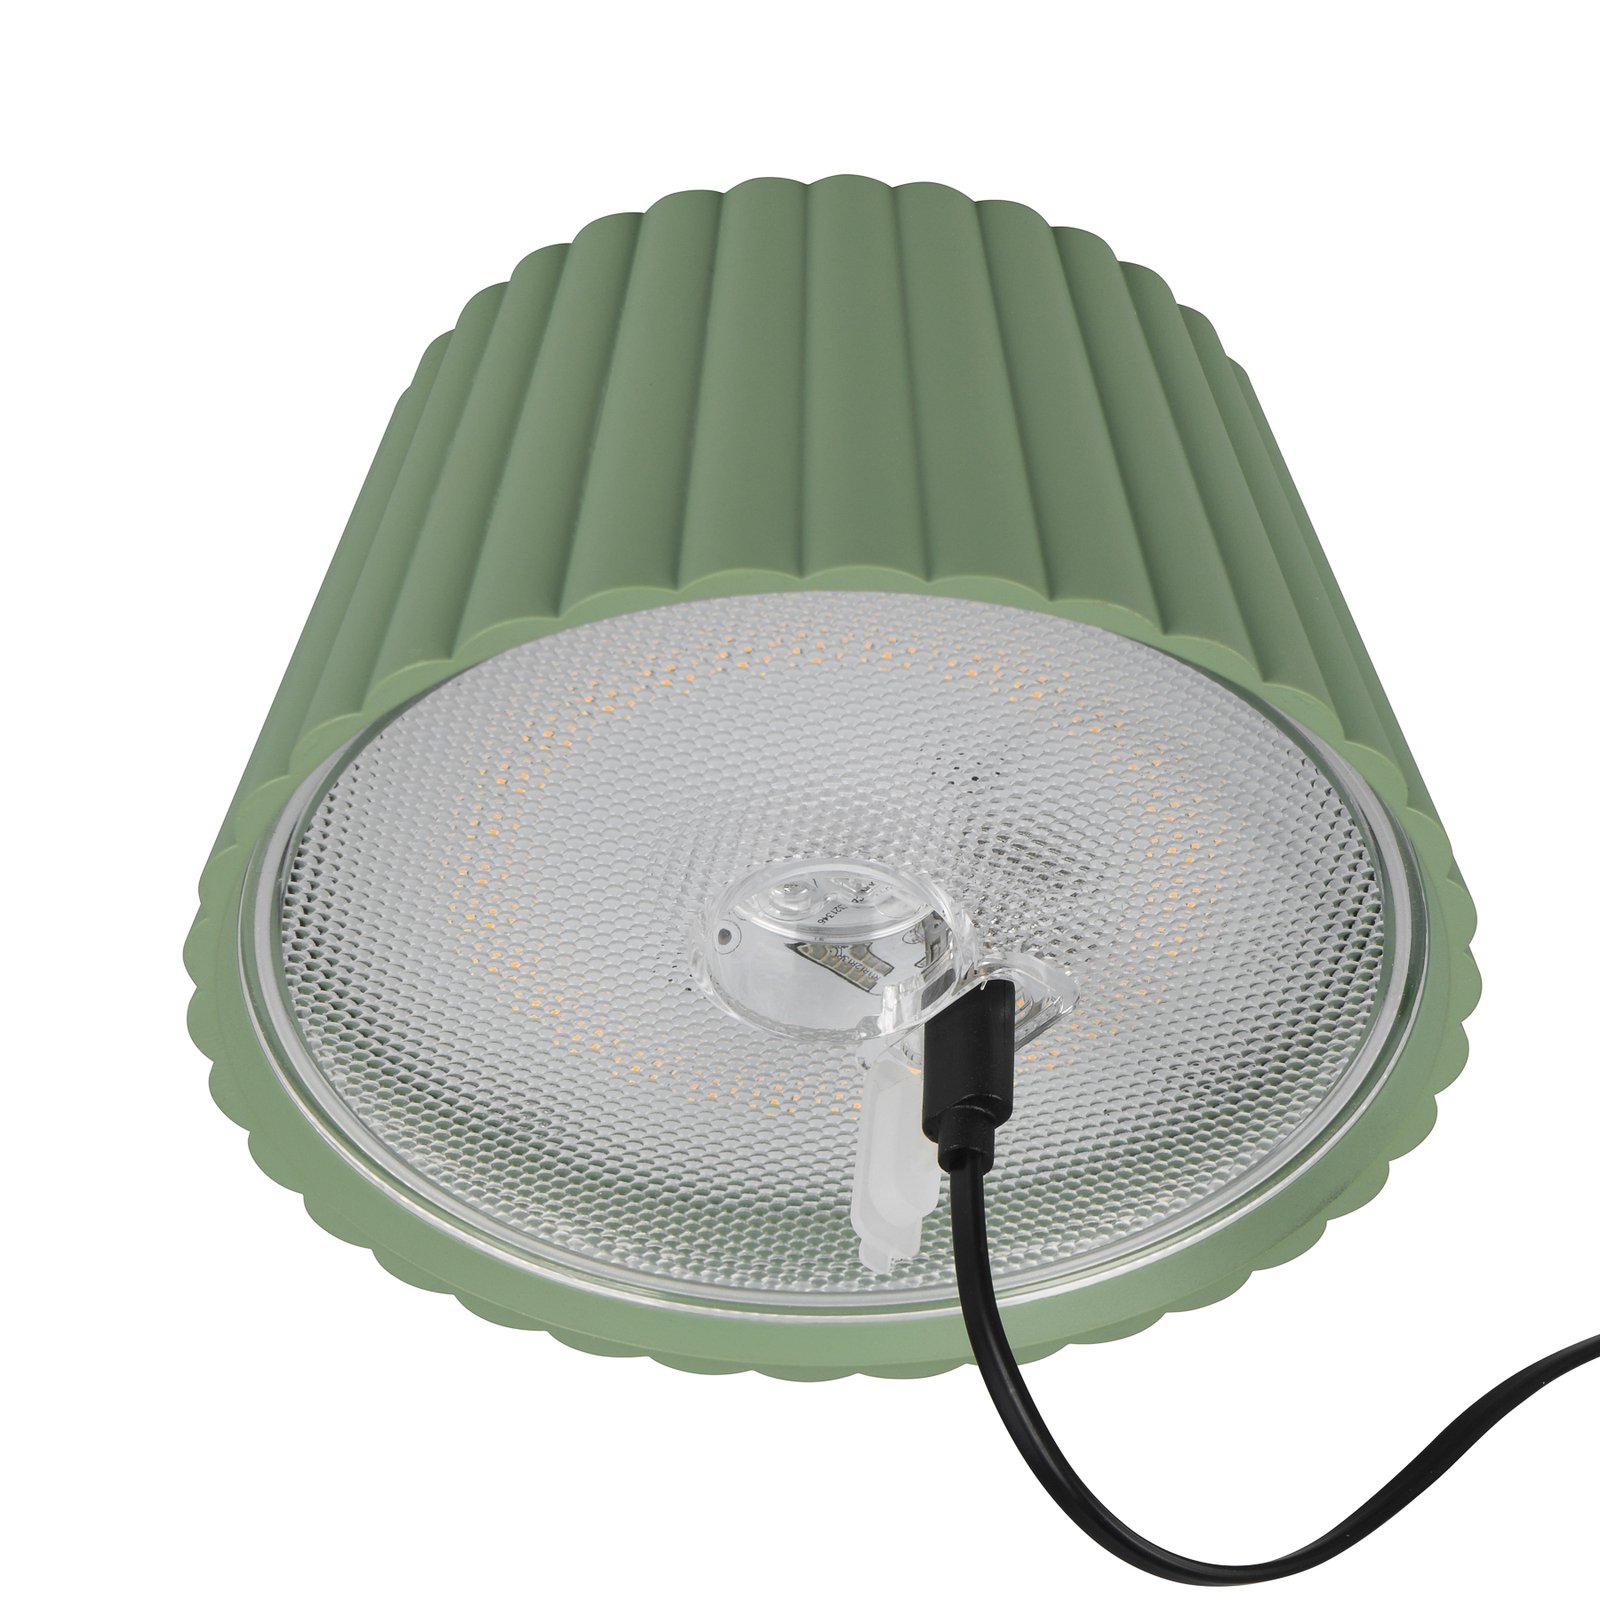 Suarez LED dobíjacia stolová lampa, zelená, výška 39 cm, kov